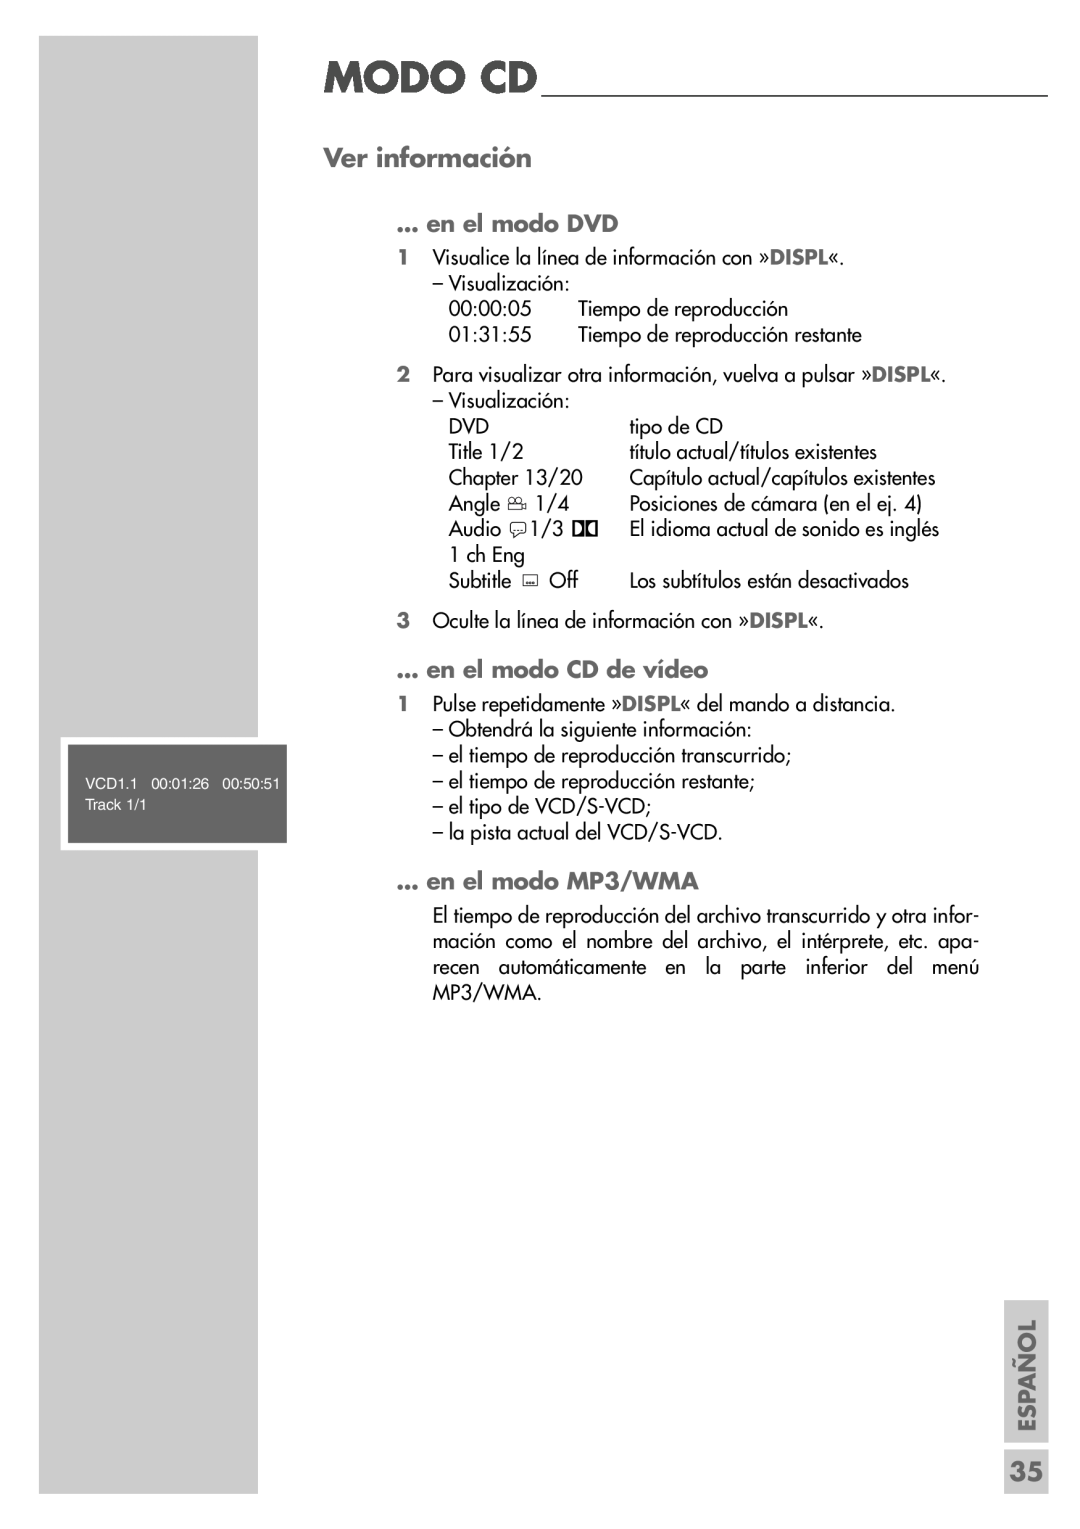 Grundig DR 5400 DD manual Ver información, en el modo DVD, en el modo CD de vídeo, en el modo MP3/WMA, Español 